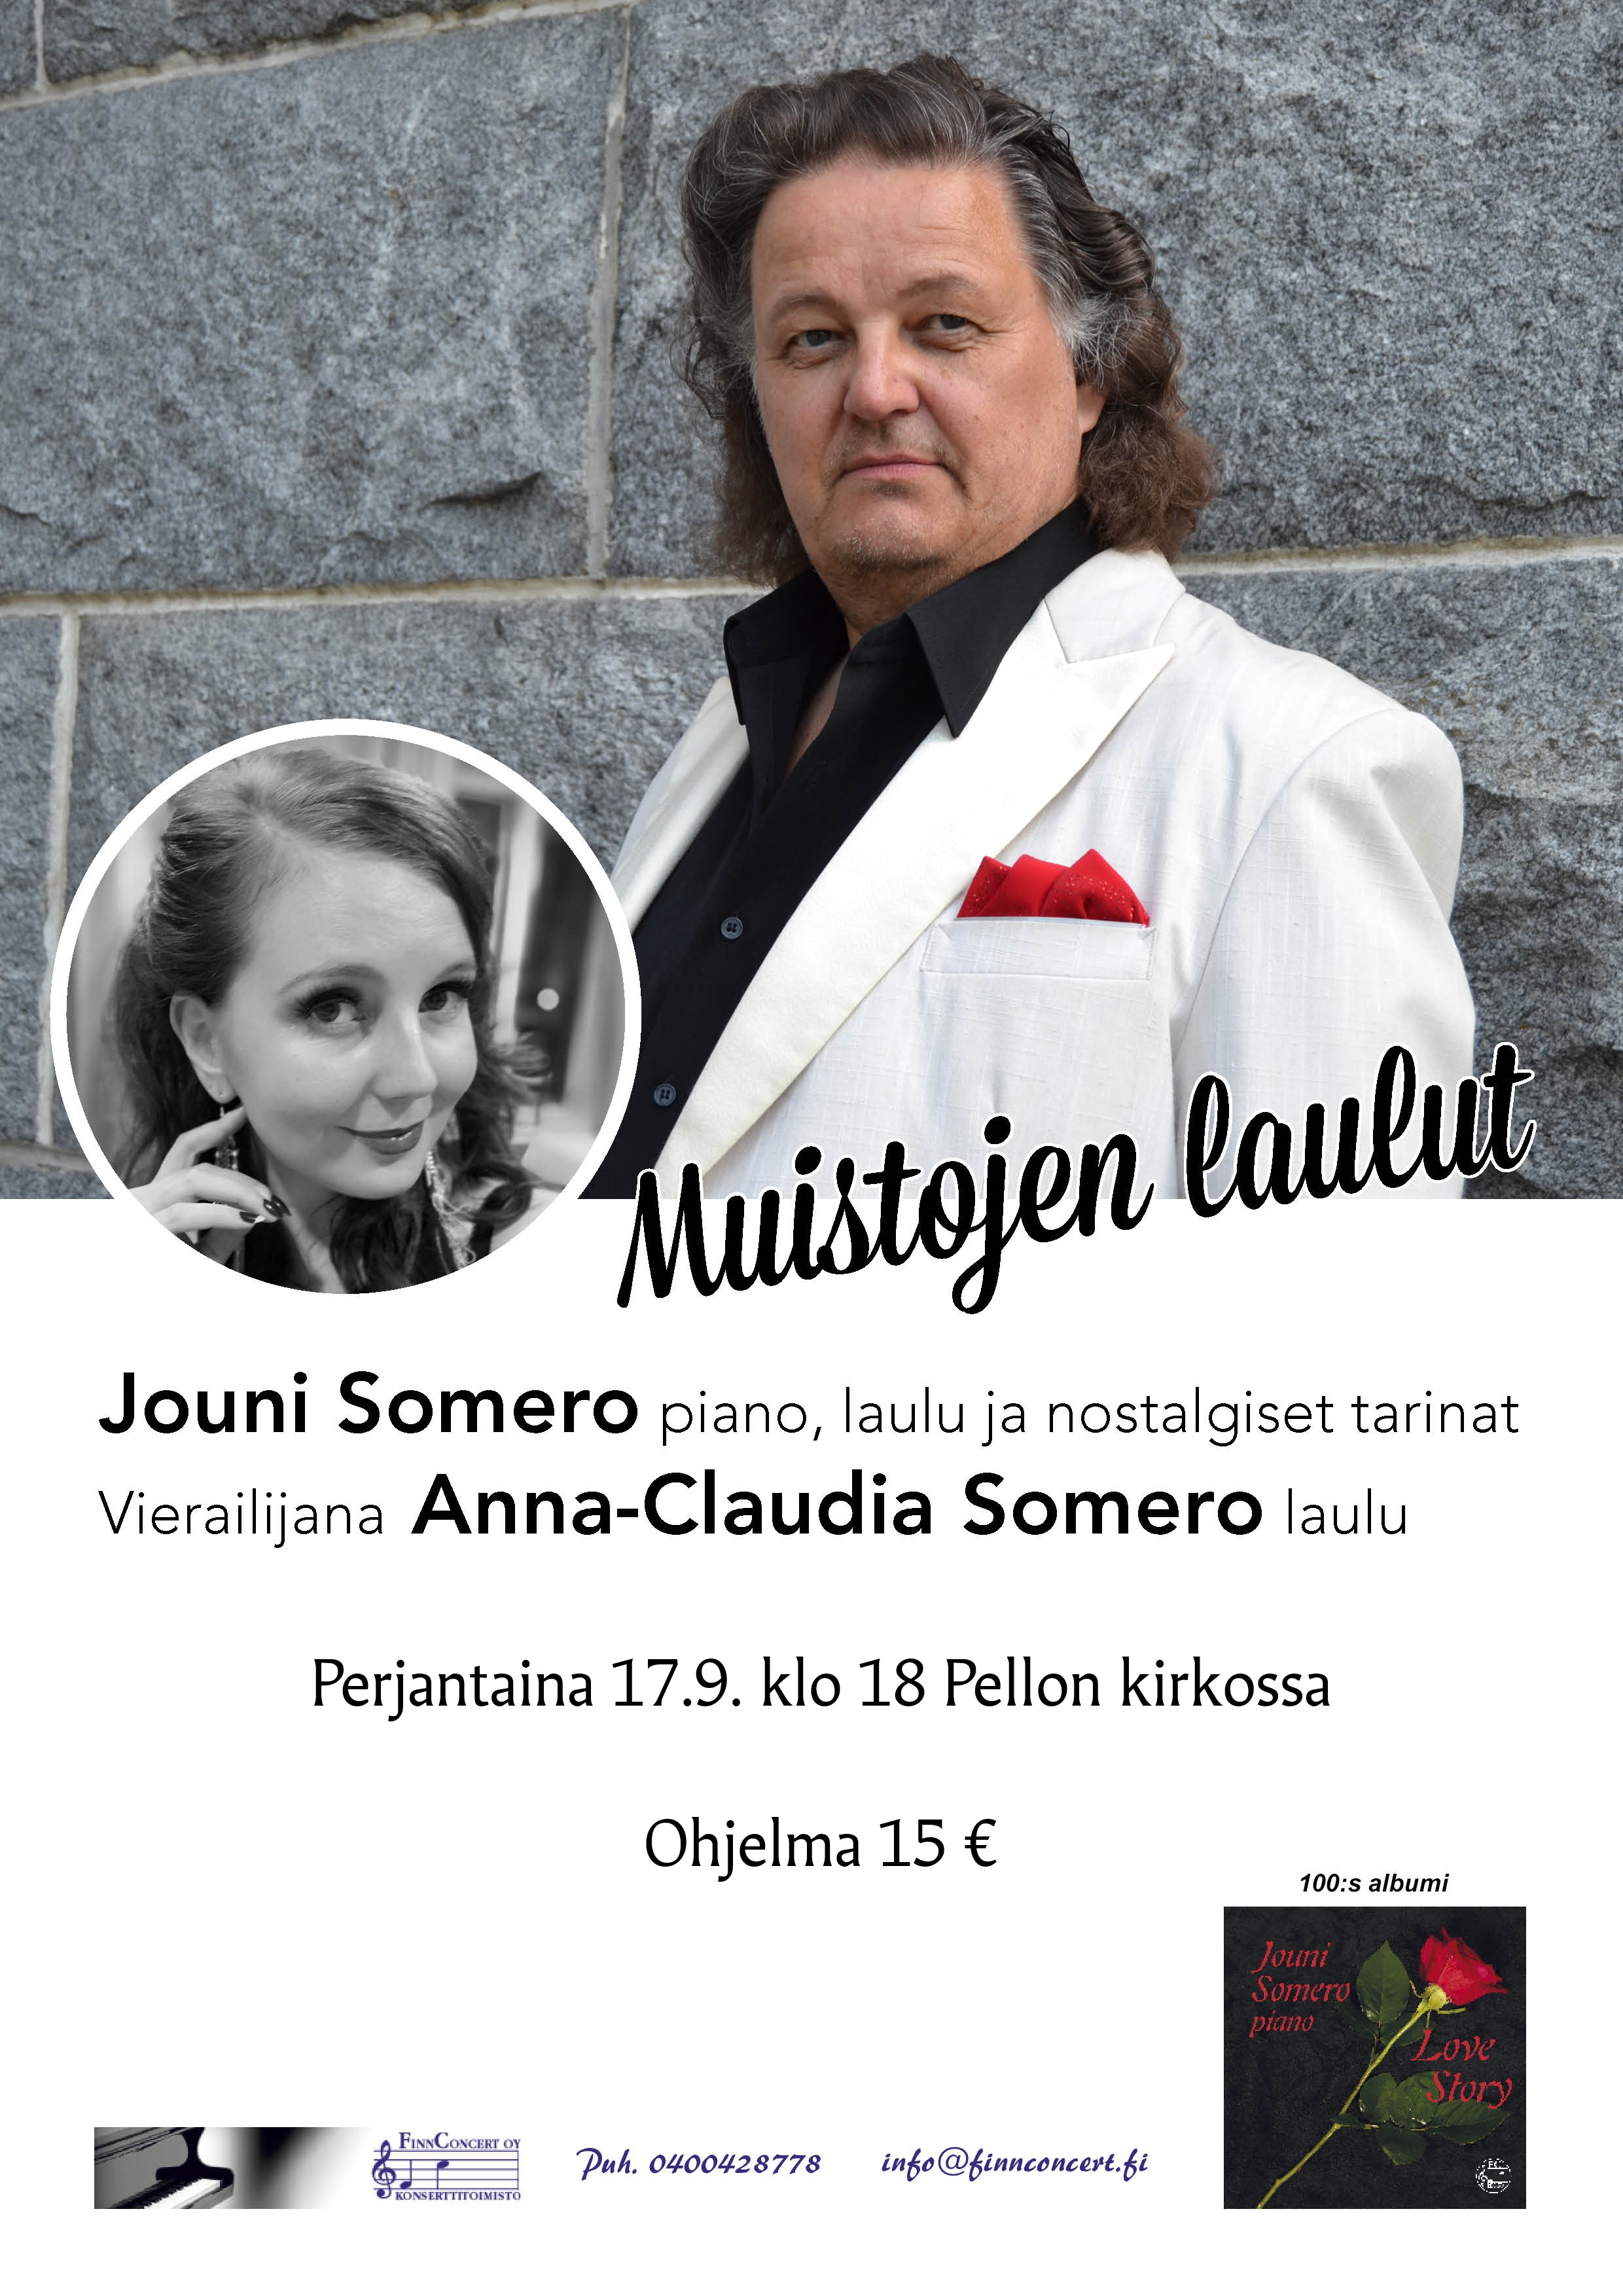 Muistojen laulut -konsertti mainos, Jouni Somero ja Anna-Claudia Someron kuvat. Konsertti Pellon kirkossa perjantaina 17.9. klo 18. Ohjelma 15 euroa.